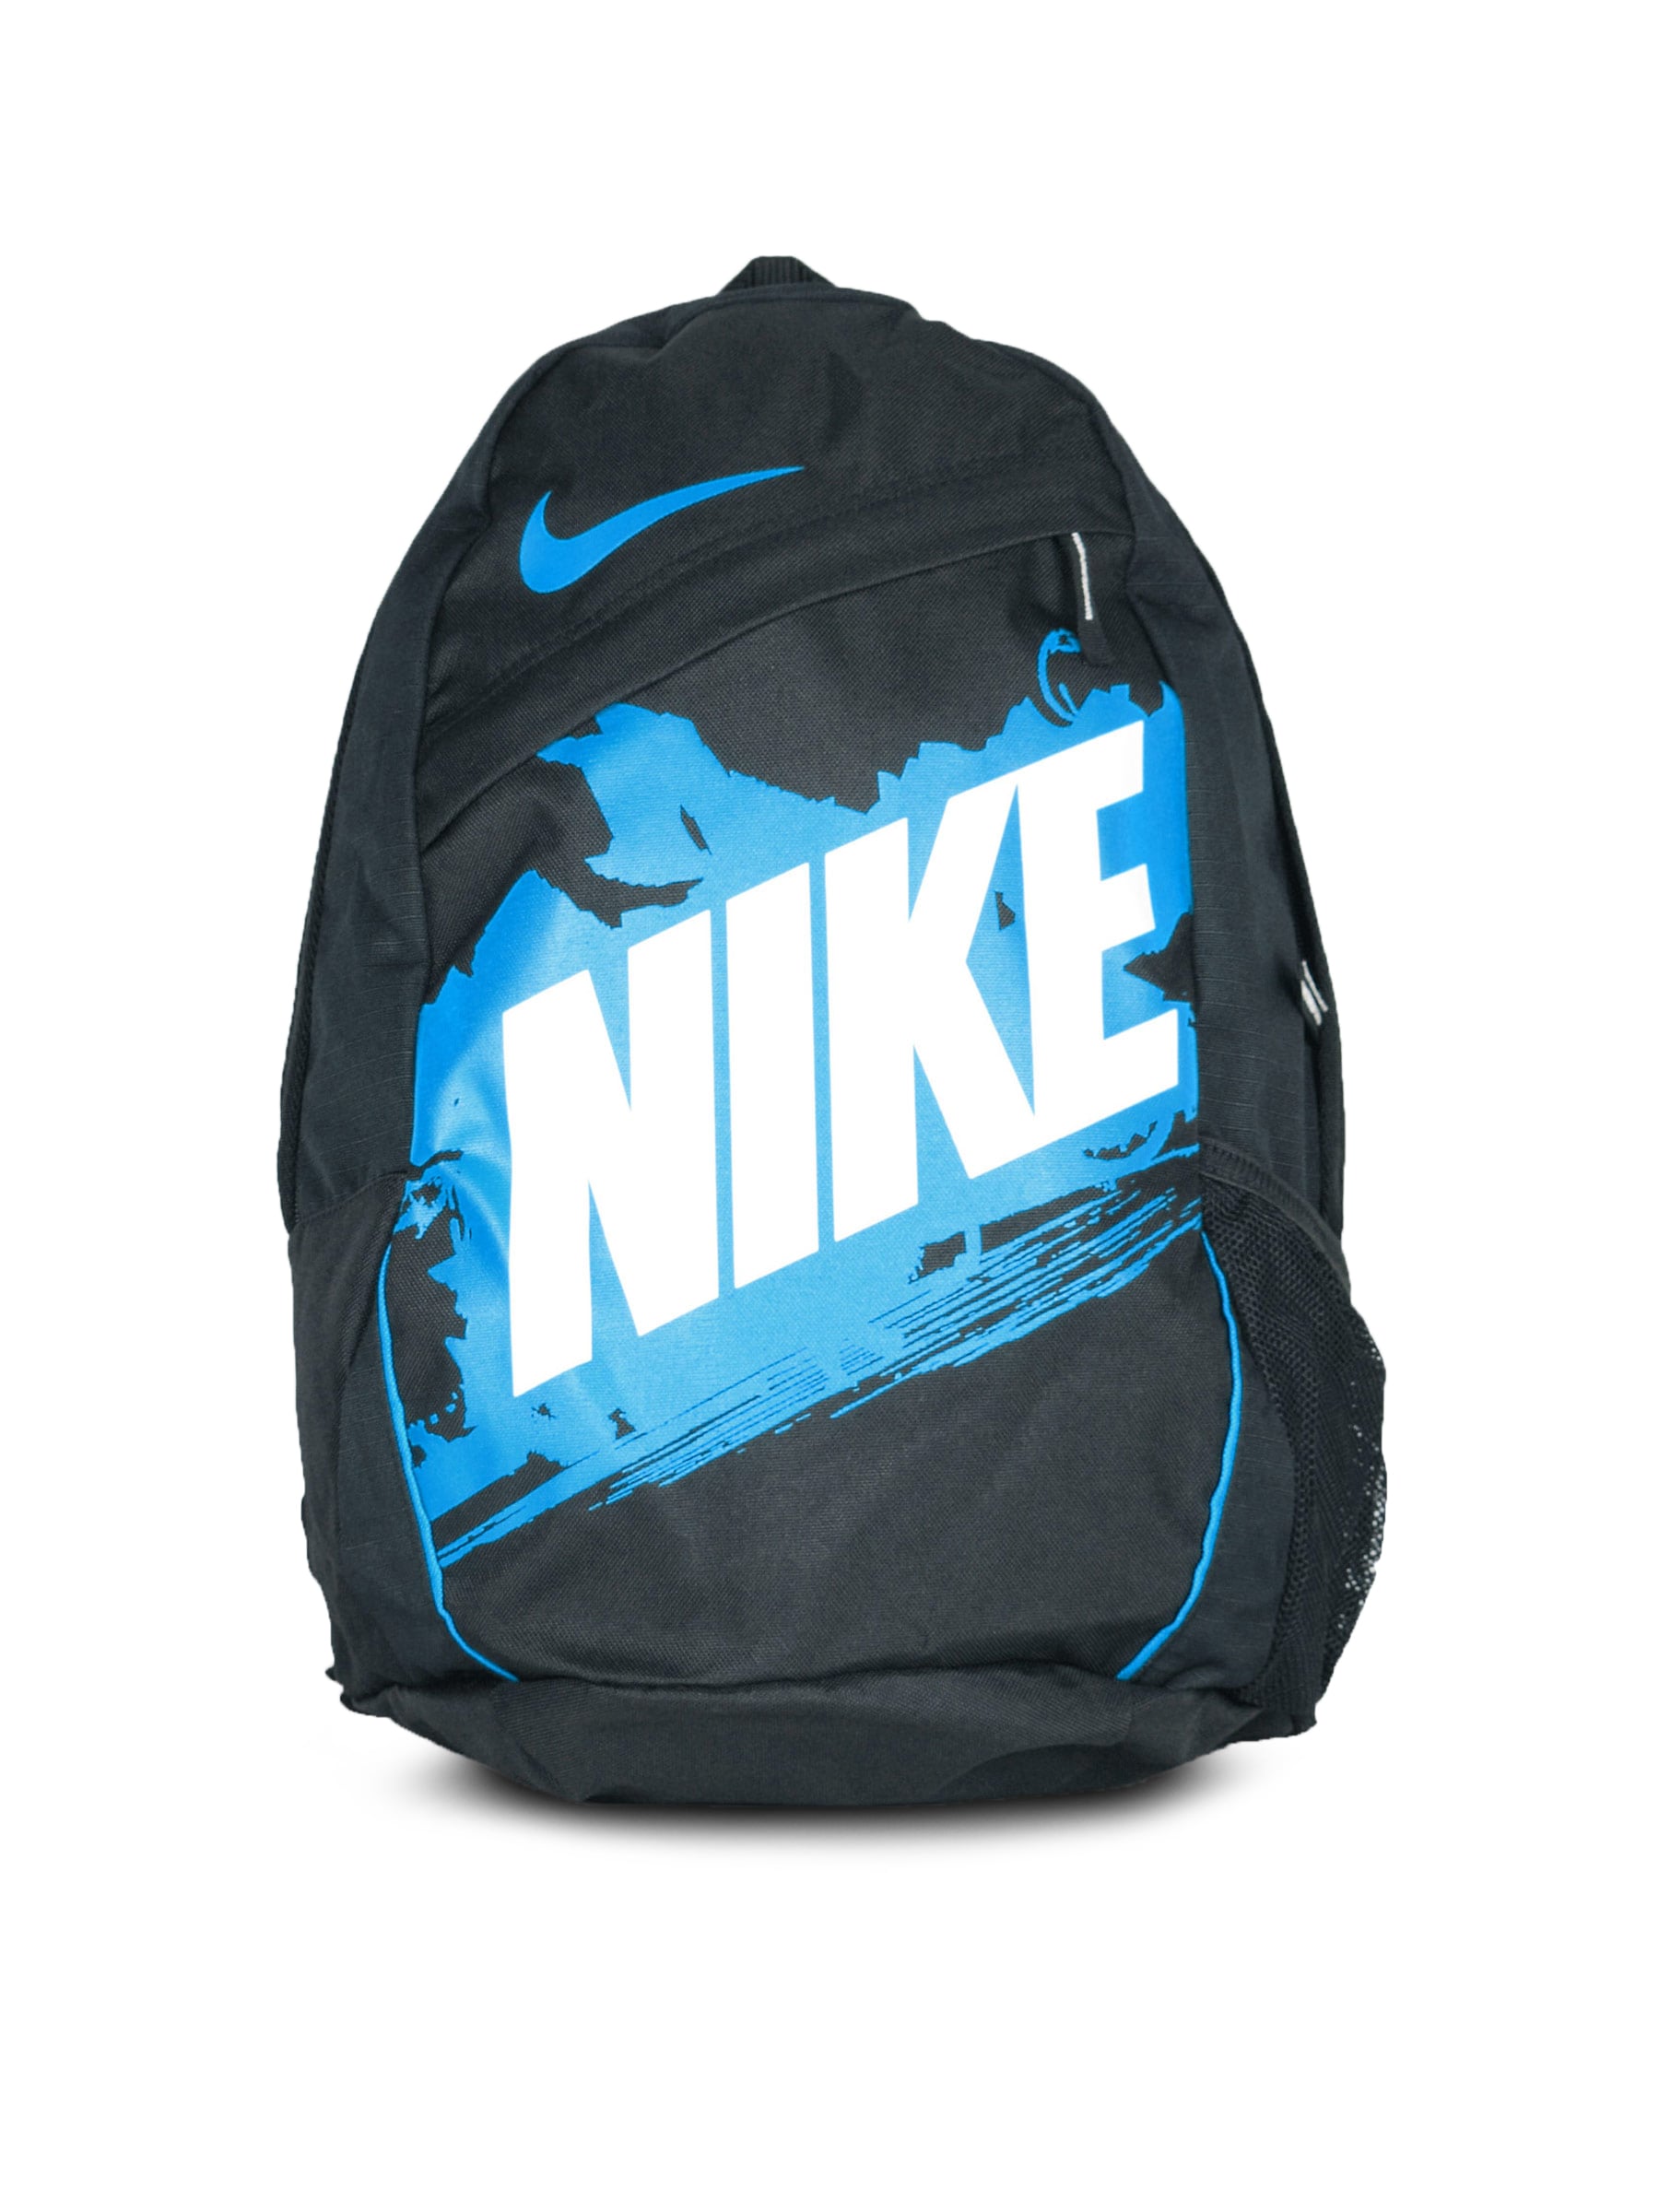 Nike Black Classic Turf     NSW  Backpacks